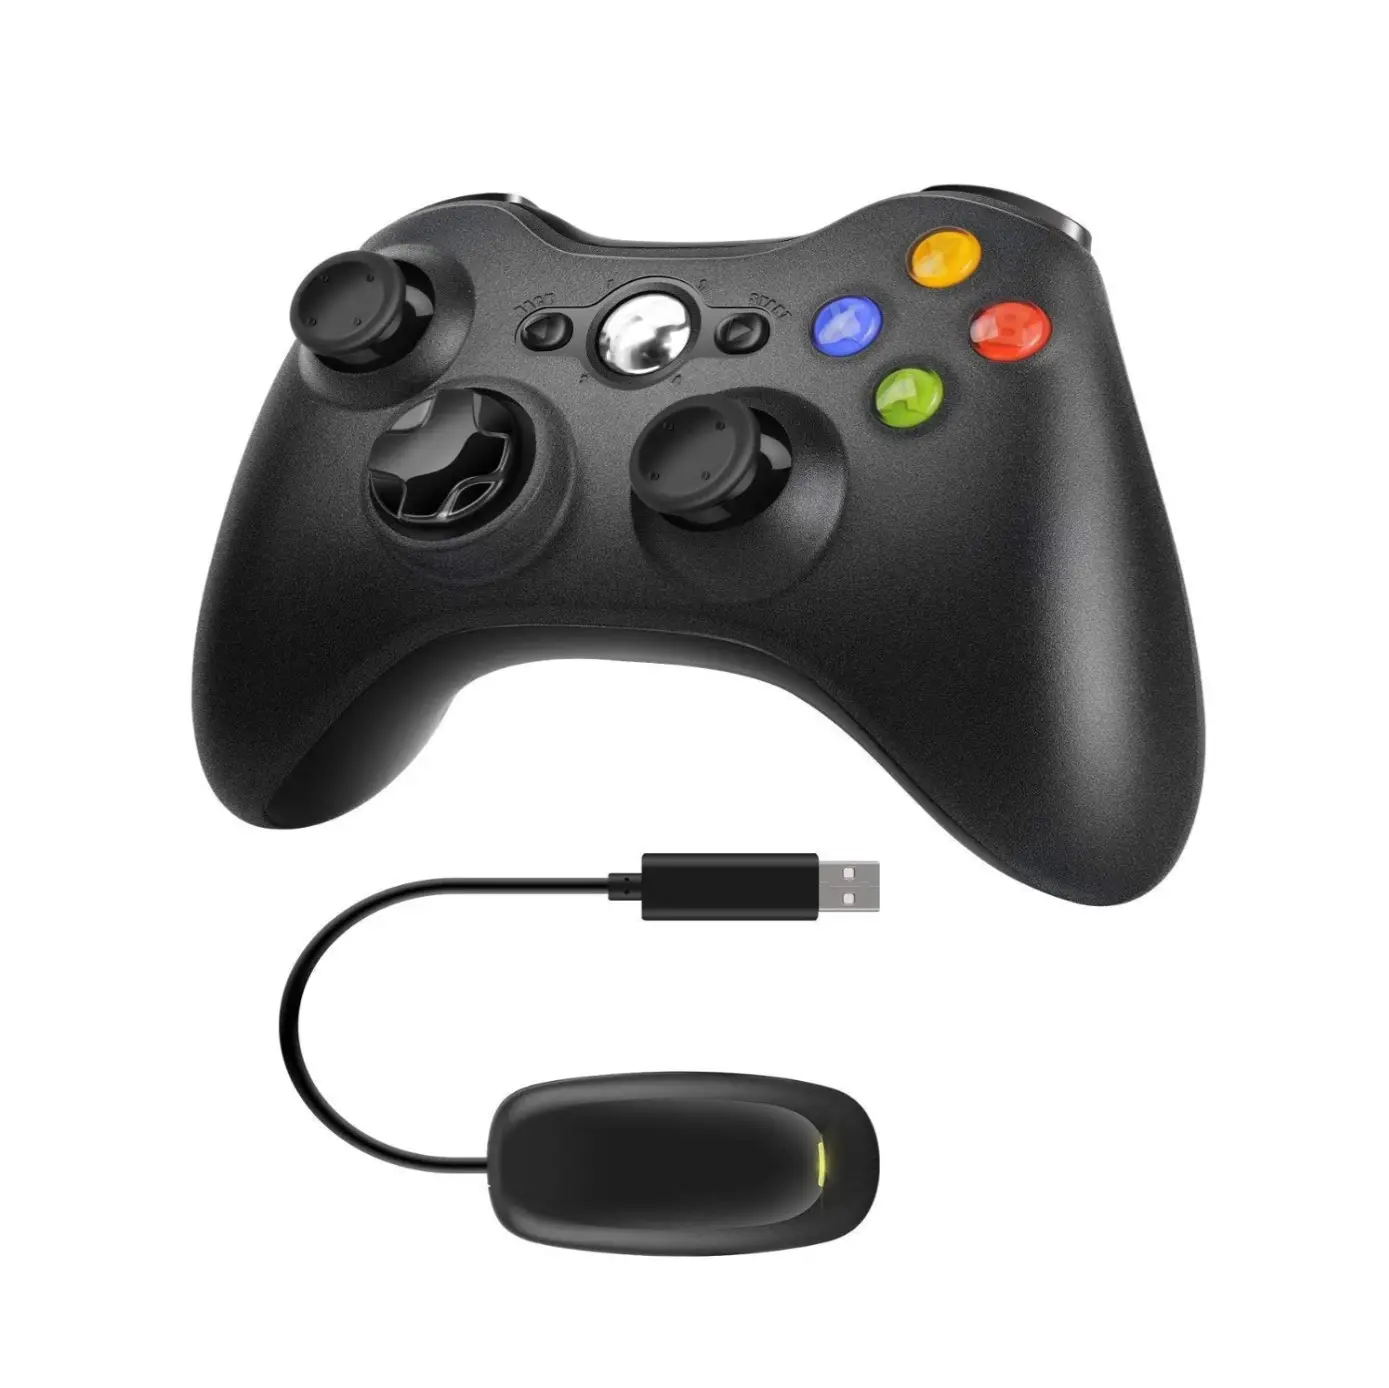 Manette de jeu sans fil, 2.4GHZ, avec récepteur, contrôleur à double Vibration améliorée, pour Xbox 360